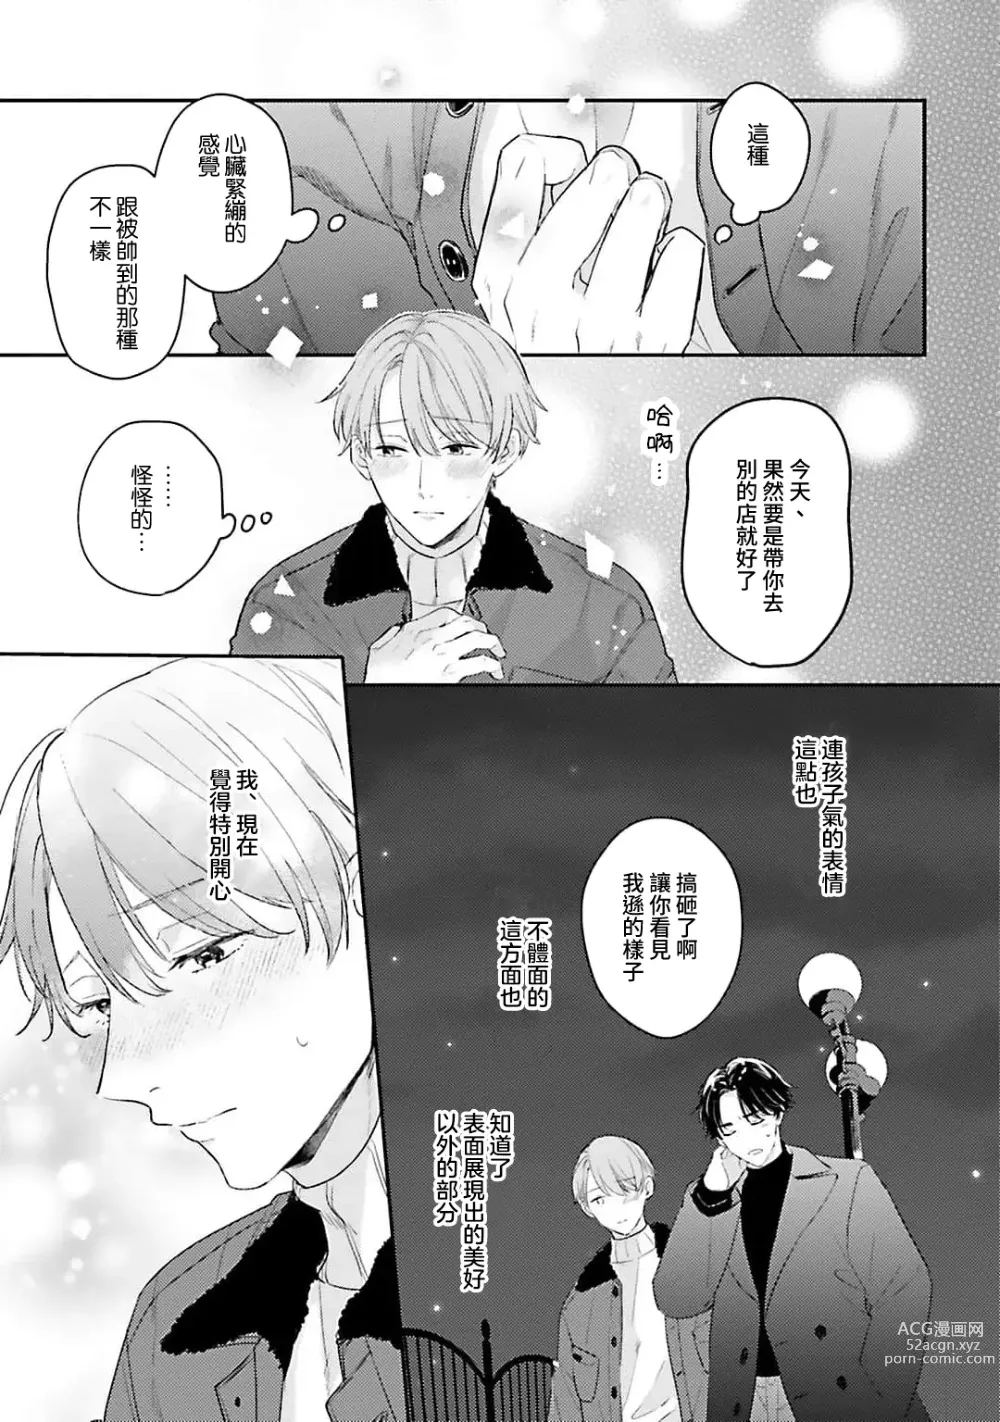 Page 112 of manga 绽放的恋爱皆为醉与甜1